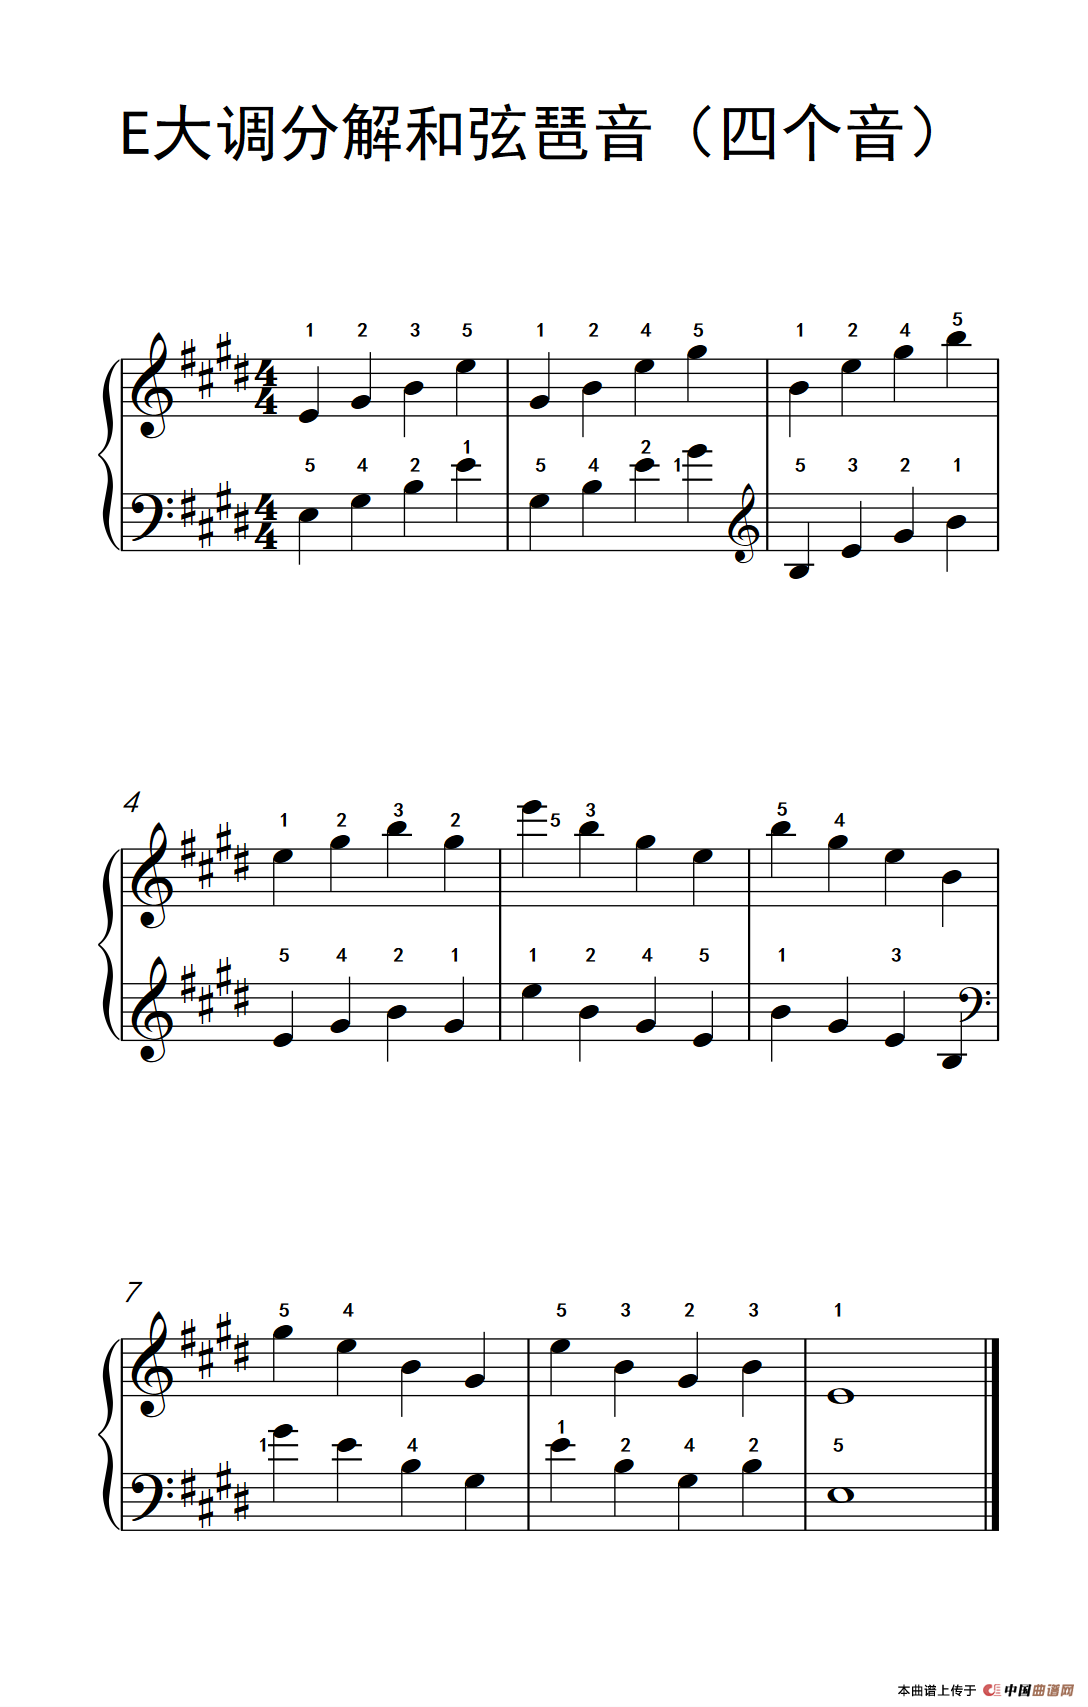 E大调分解和弦琶音(四个音)(孩子们的钢琴